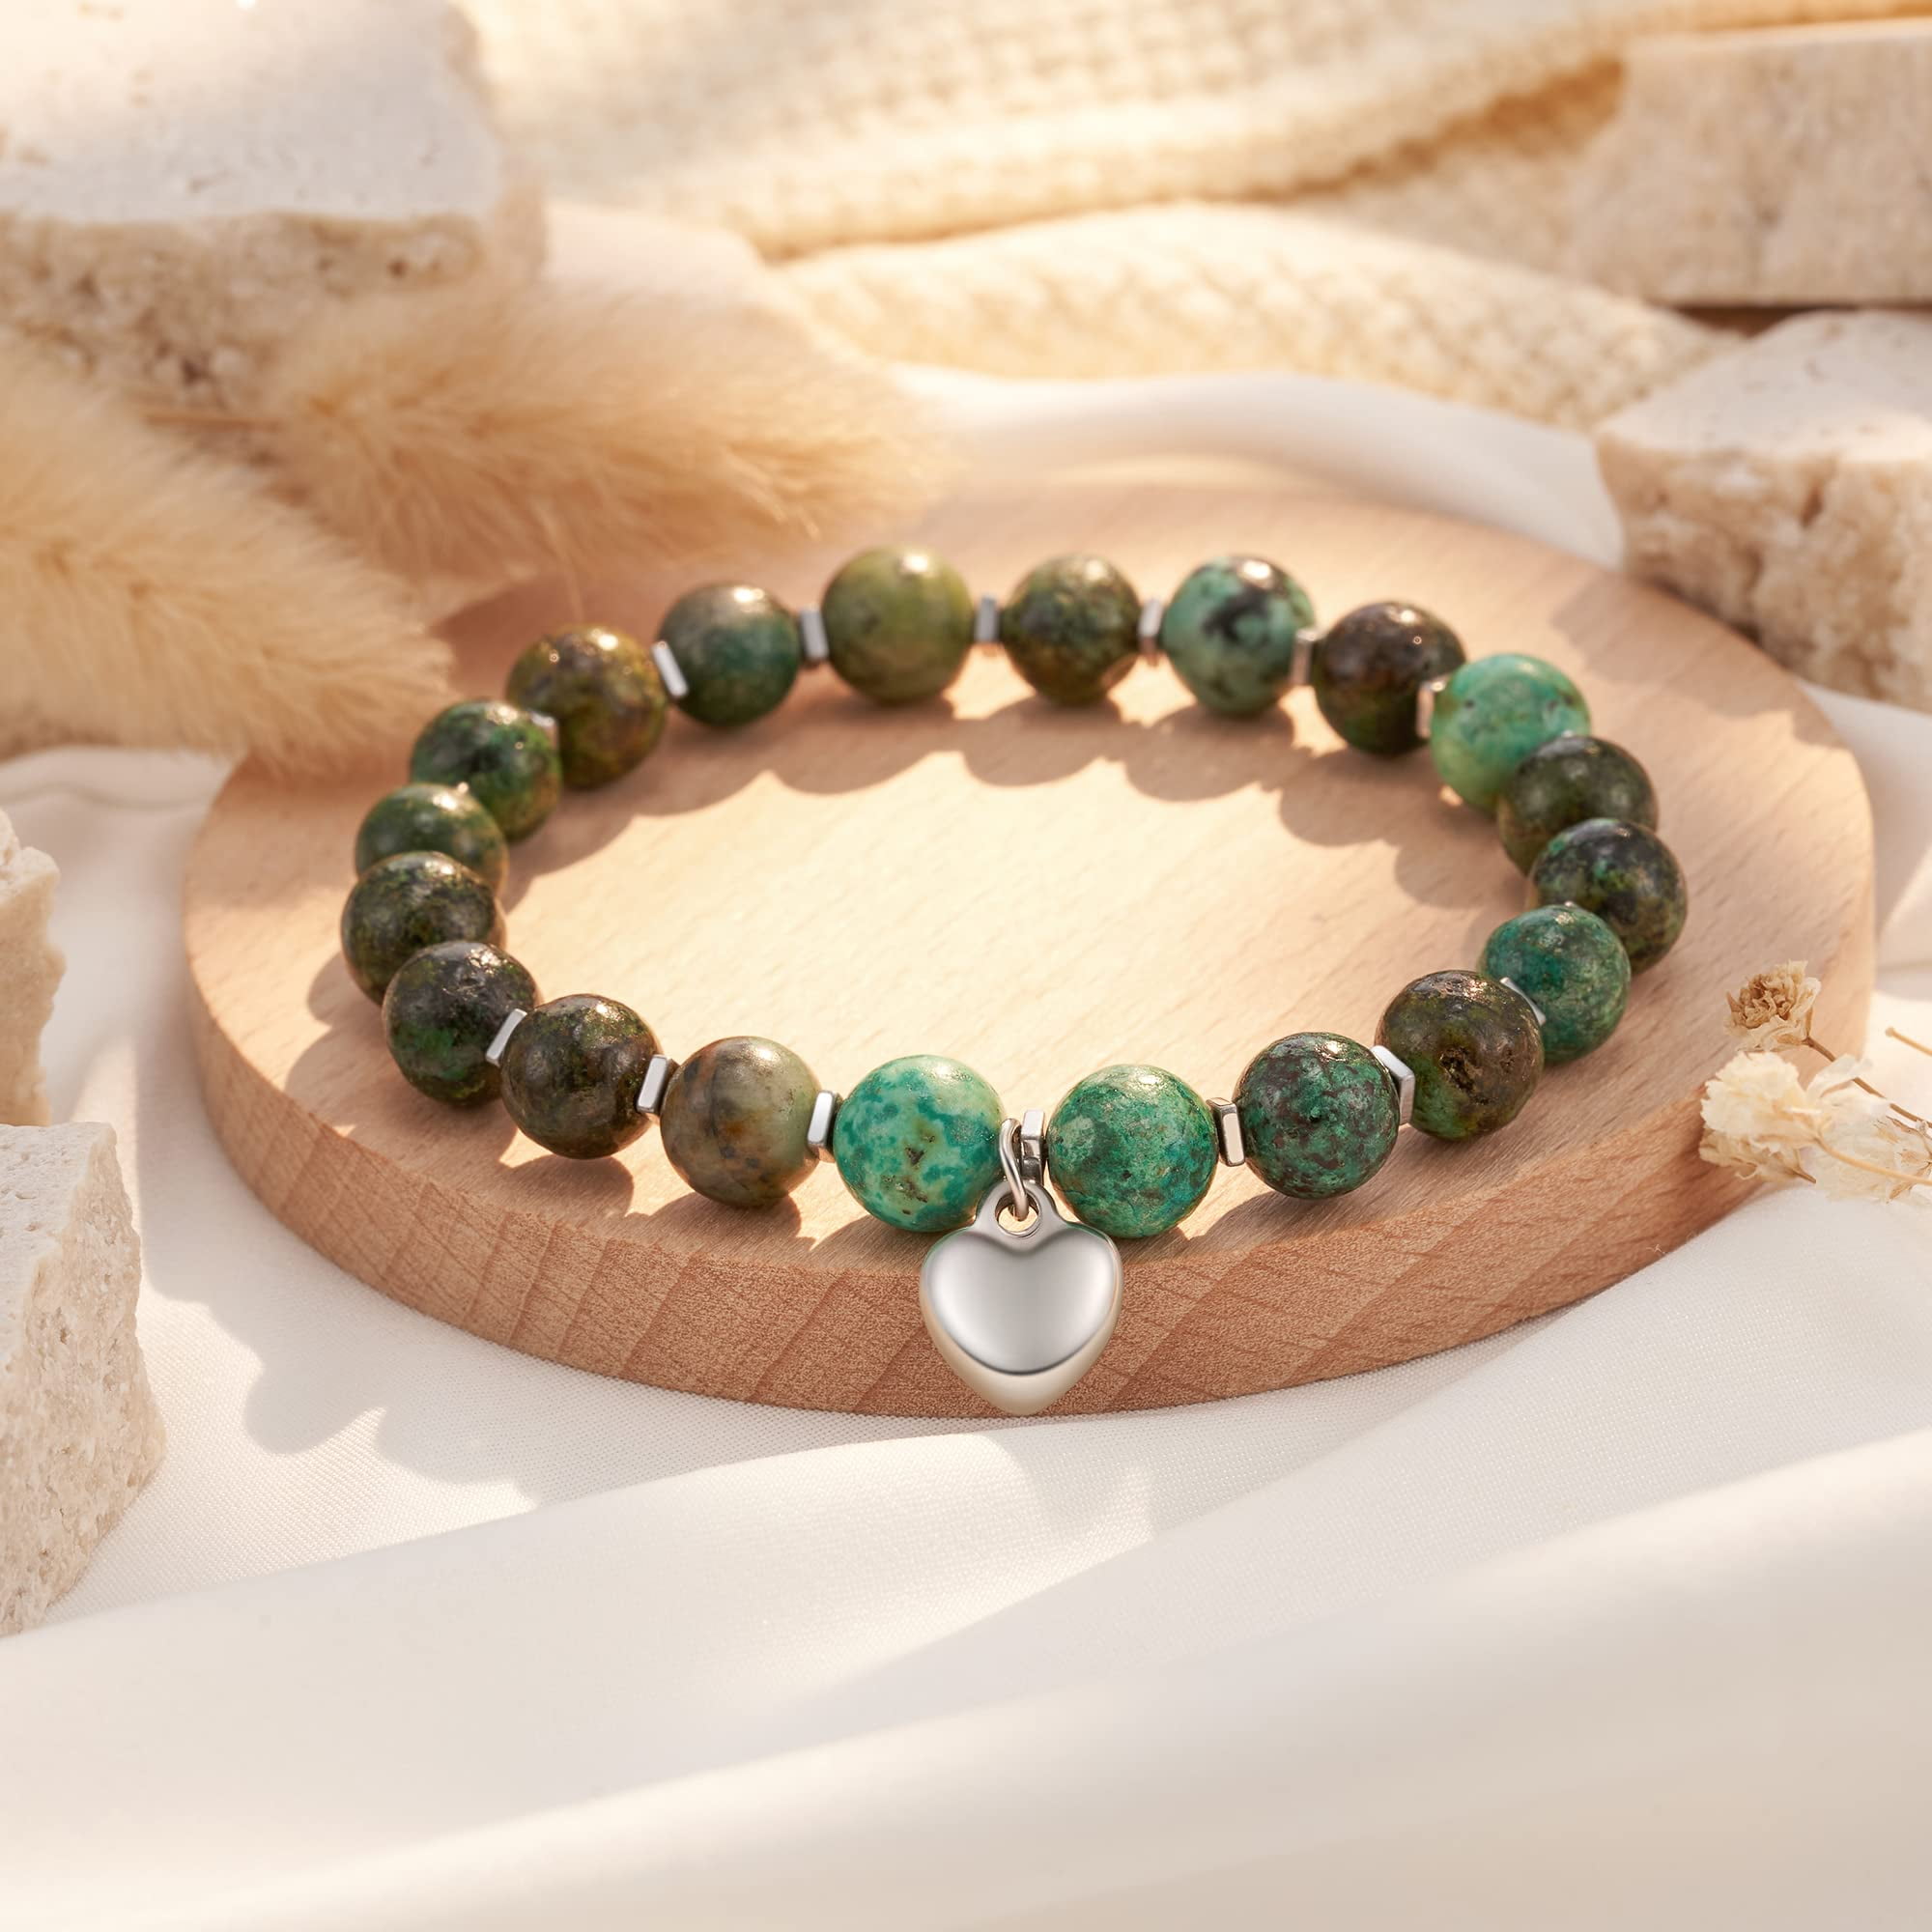 Celestial Design Green Stone Bracelet Rakhi for Brothers | Buy Online Rakhi  Set of 2